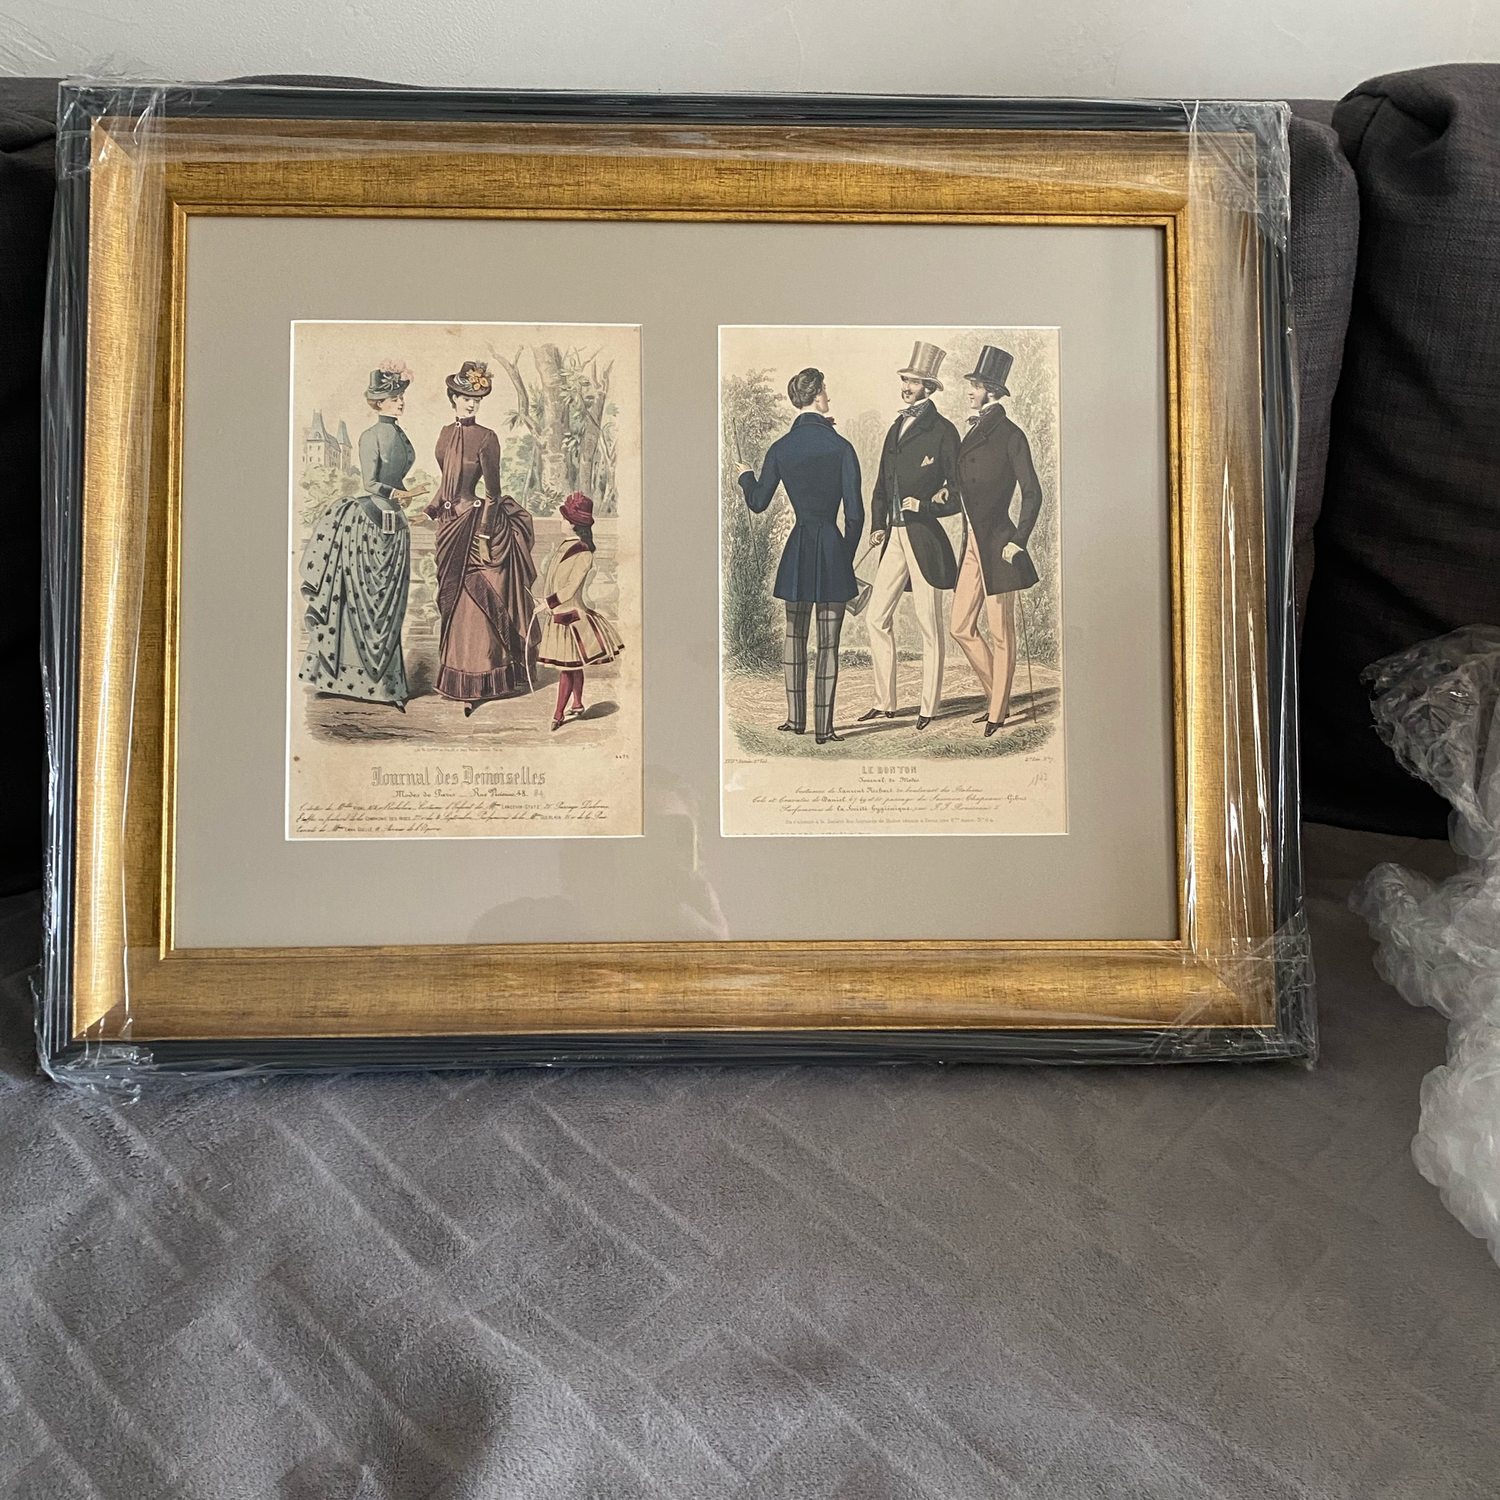 Photo №1 к отзыву покупателя Tania о товаре Винтаж: Мужская и женская мода, антикварные гравюры 1871 года в багете